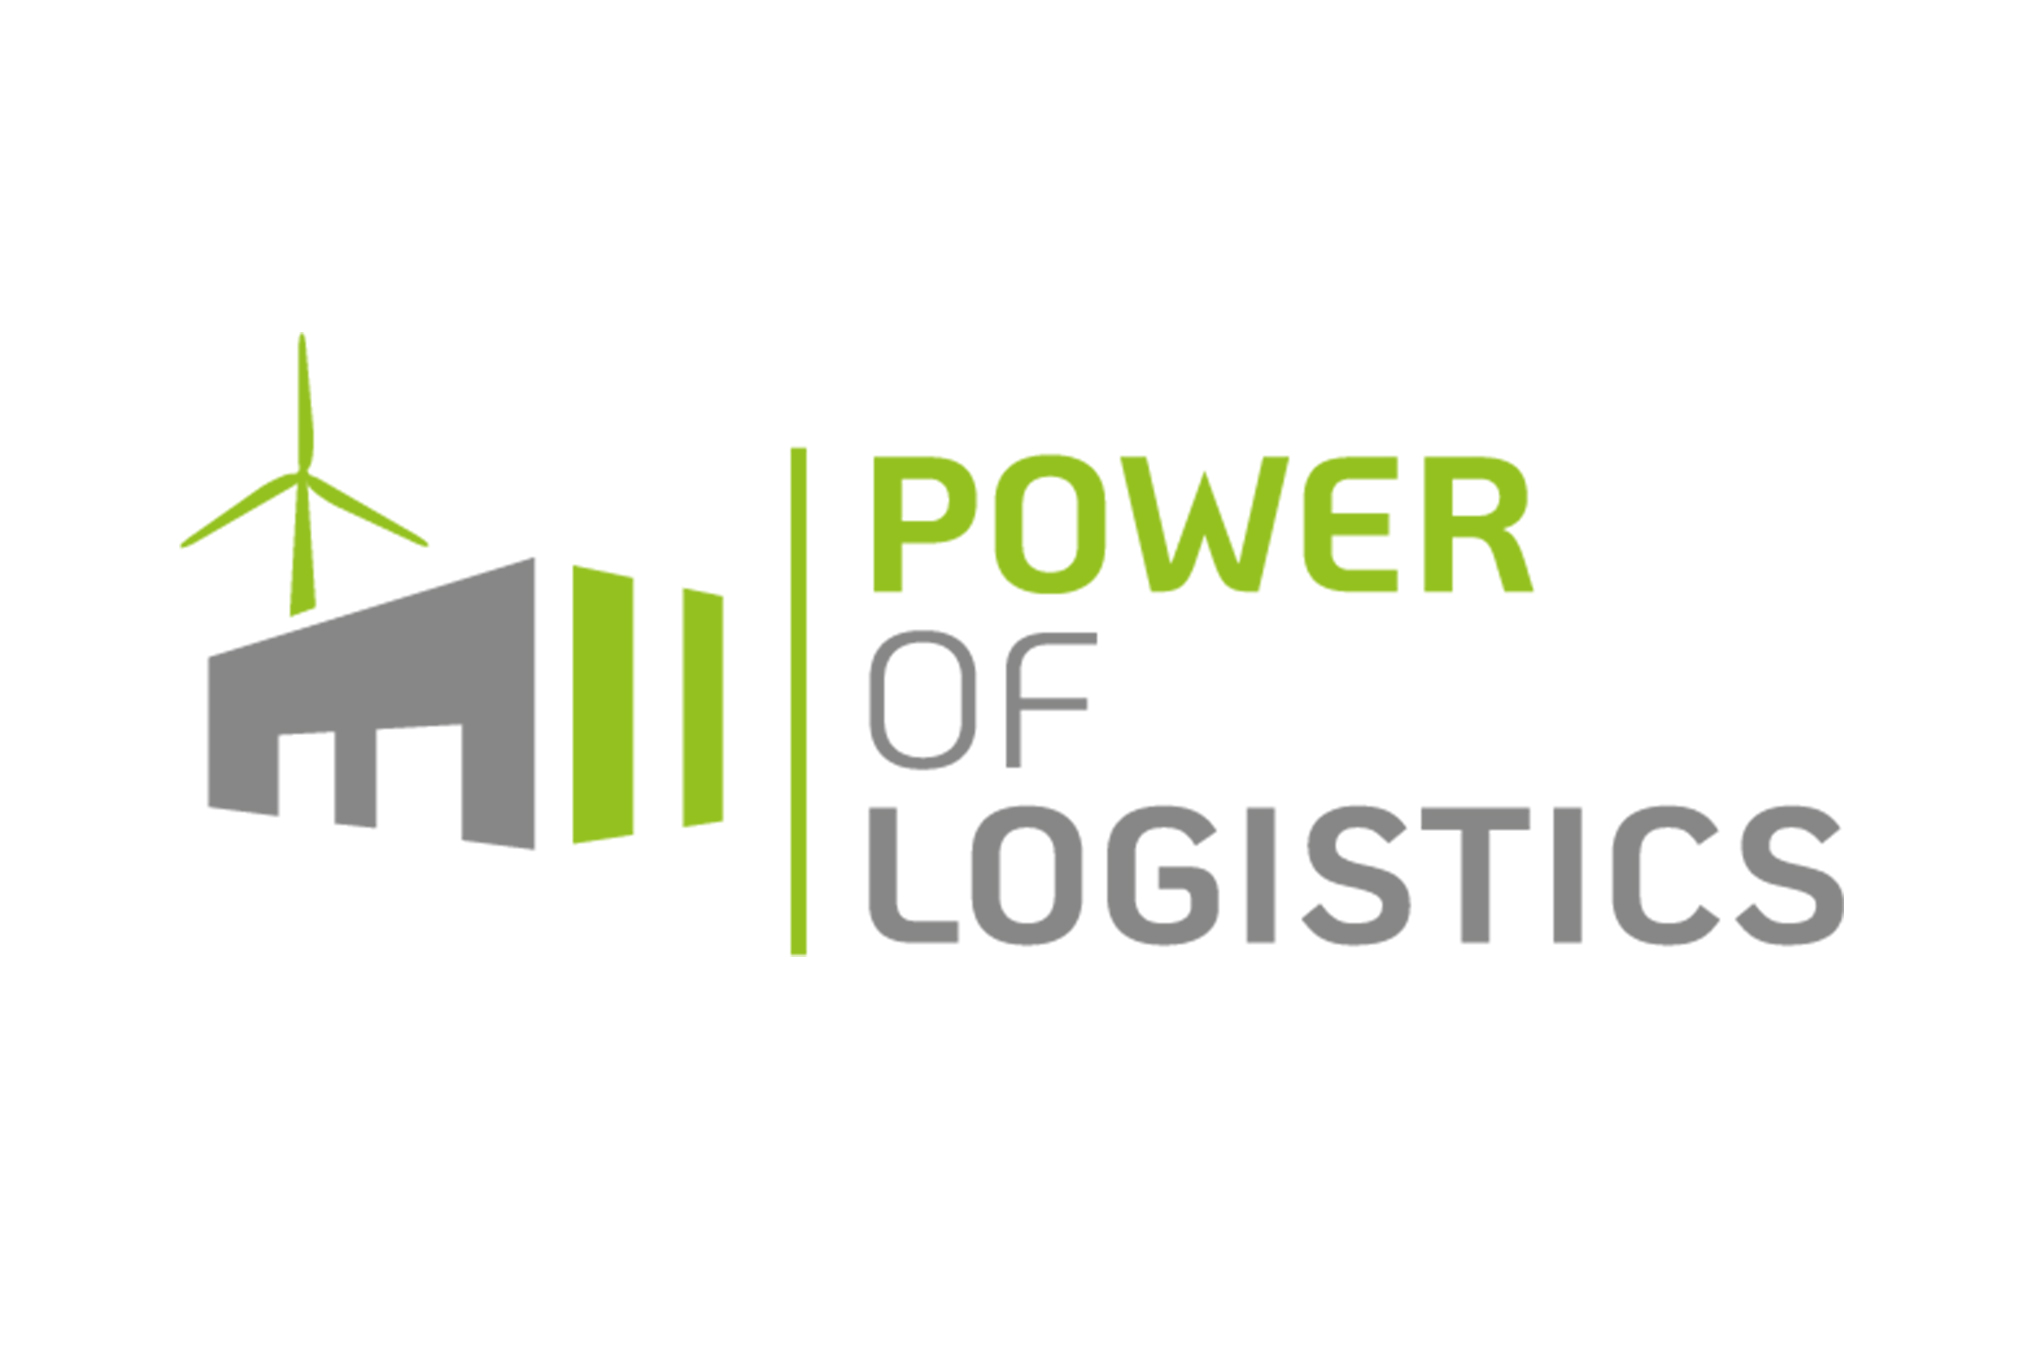 Logistikimmobilien als nachhaltiger Energielieferant